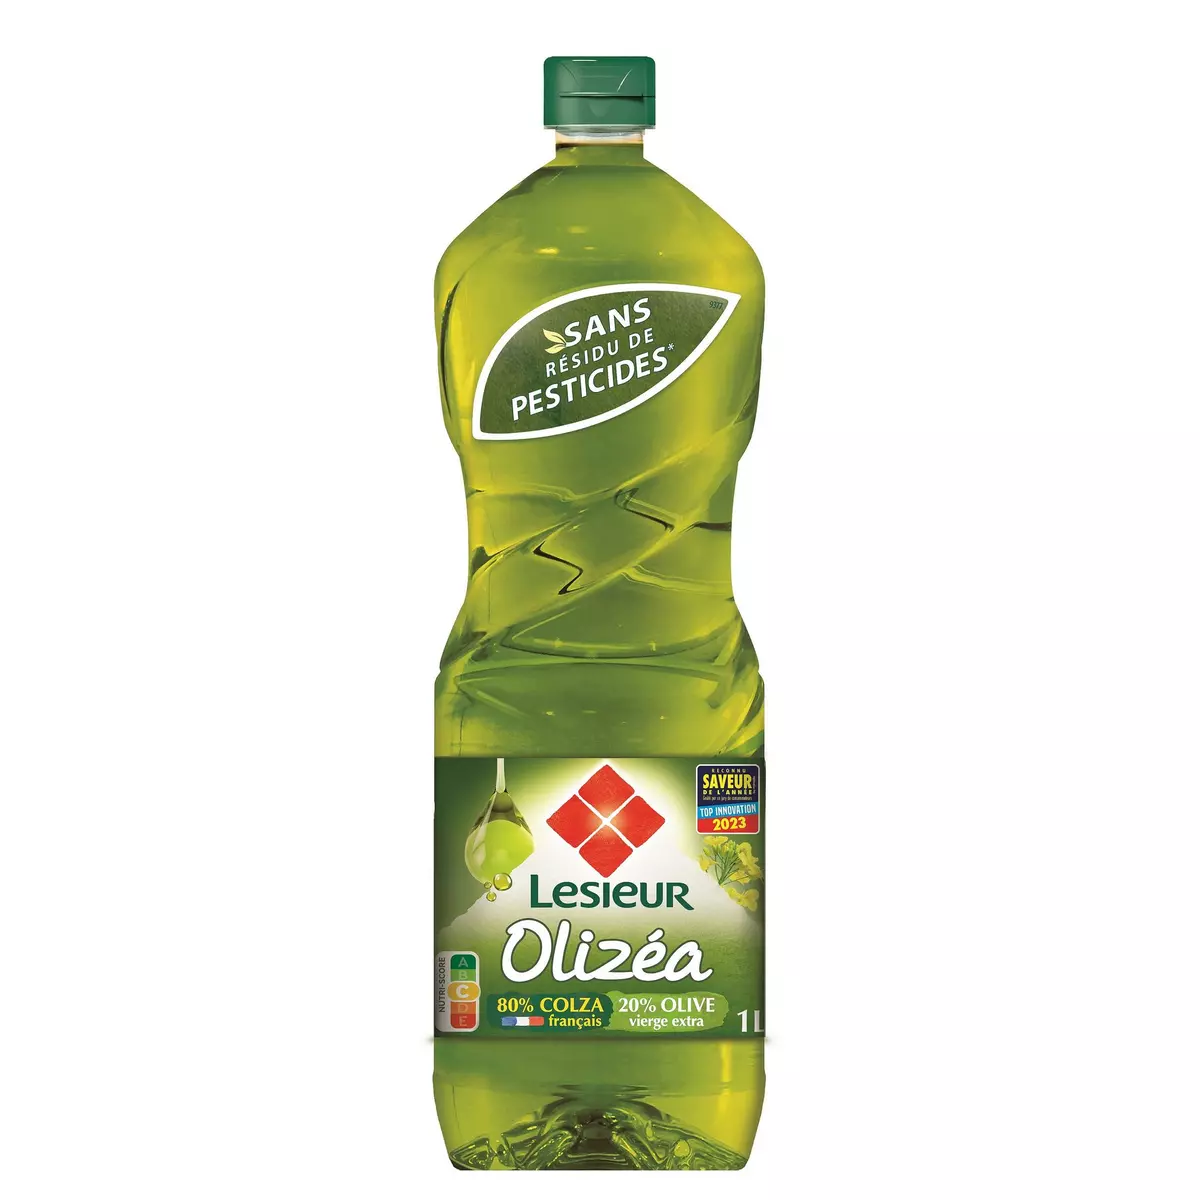 LESIEUR Huile de colza et olive Olizéa 1l